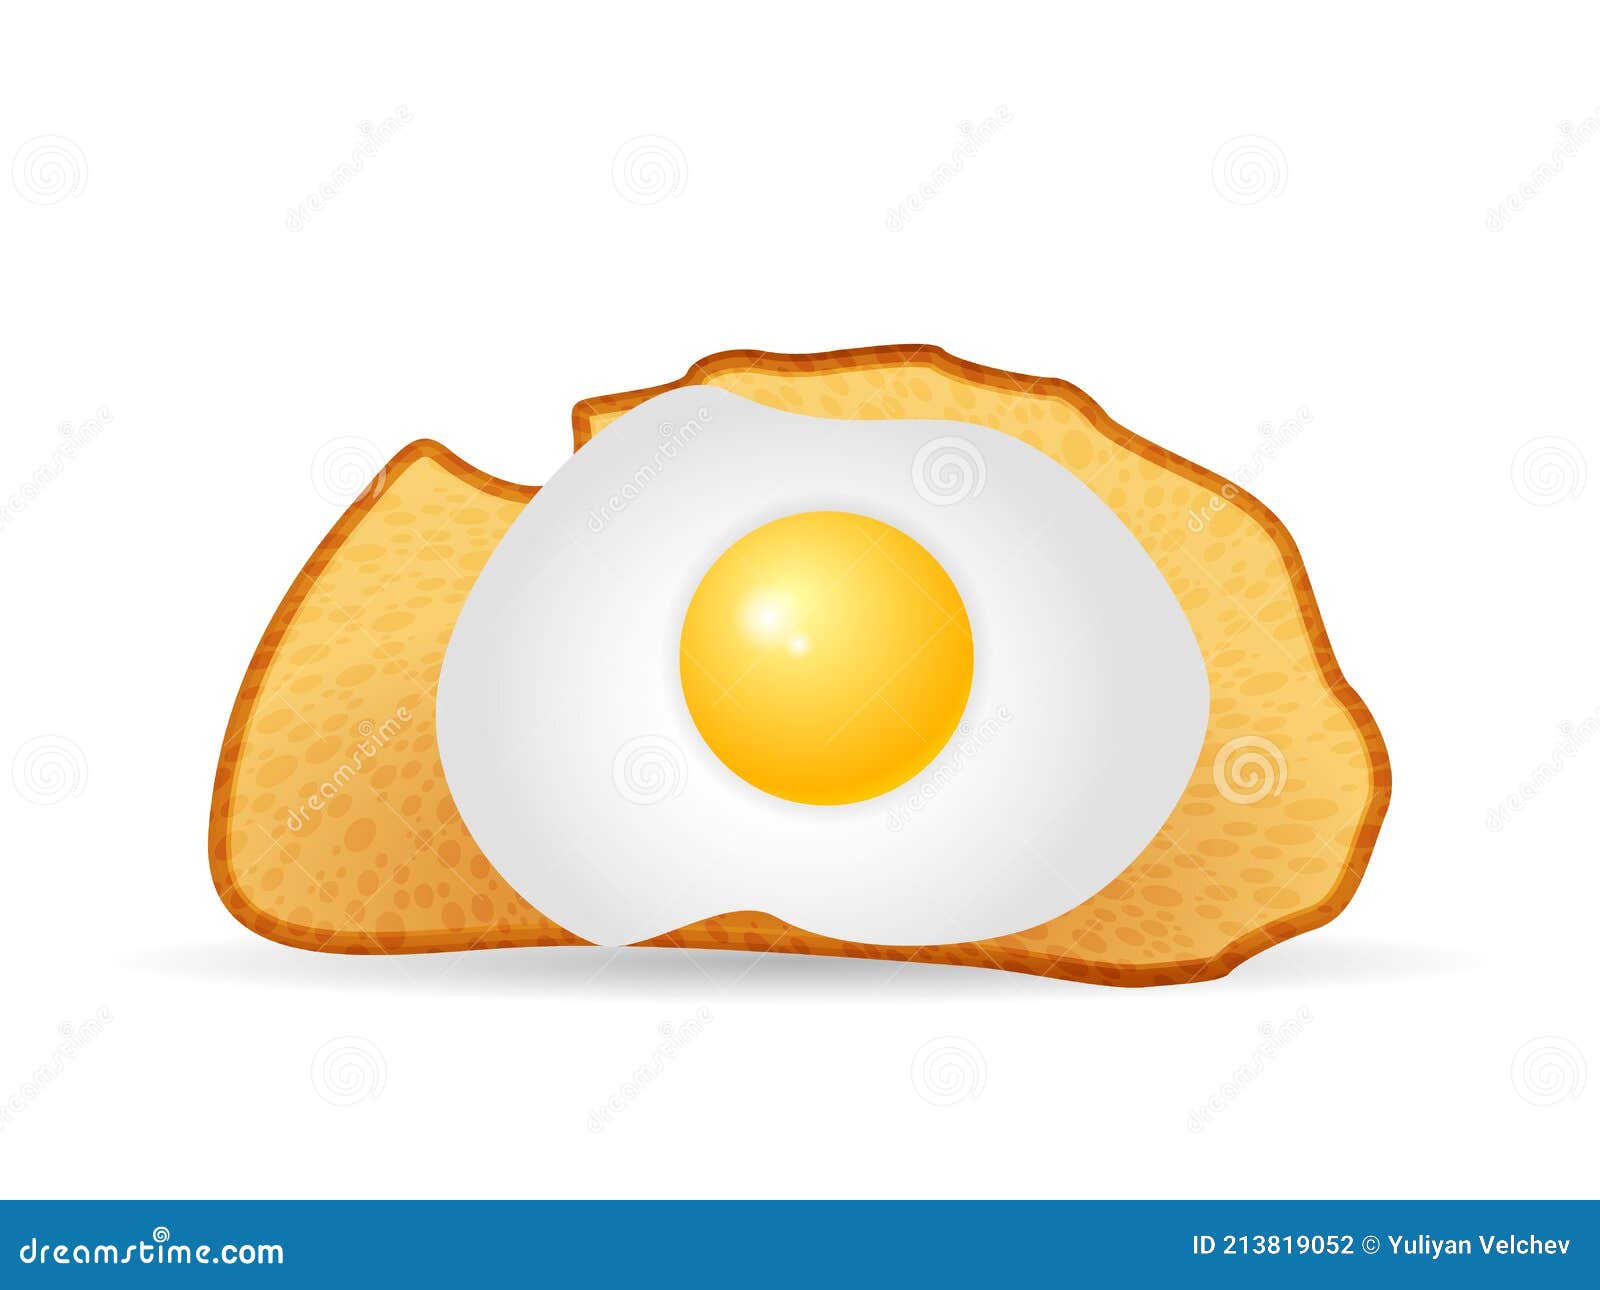 平底鍋煎雞蛋卡通png文件, 蛋, 吃, 菜單PNG去背圖片素材免費下載，免摳圖設計圖案下載 - Pngtree